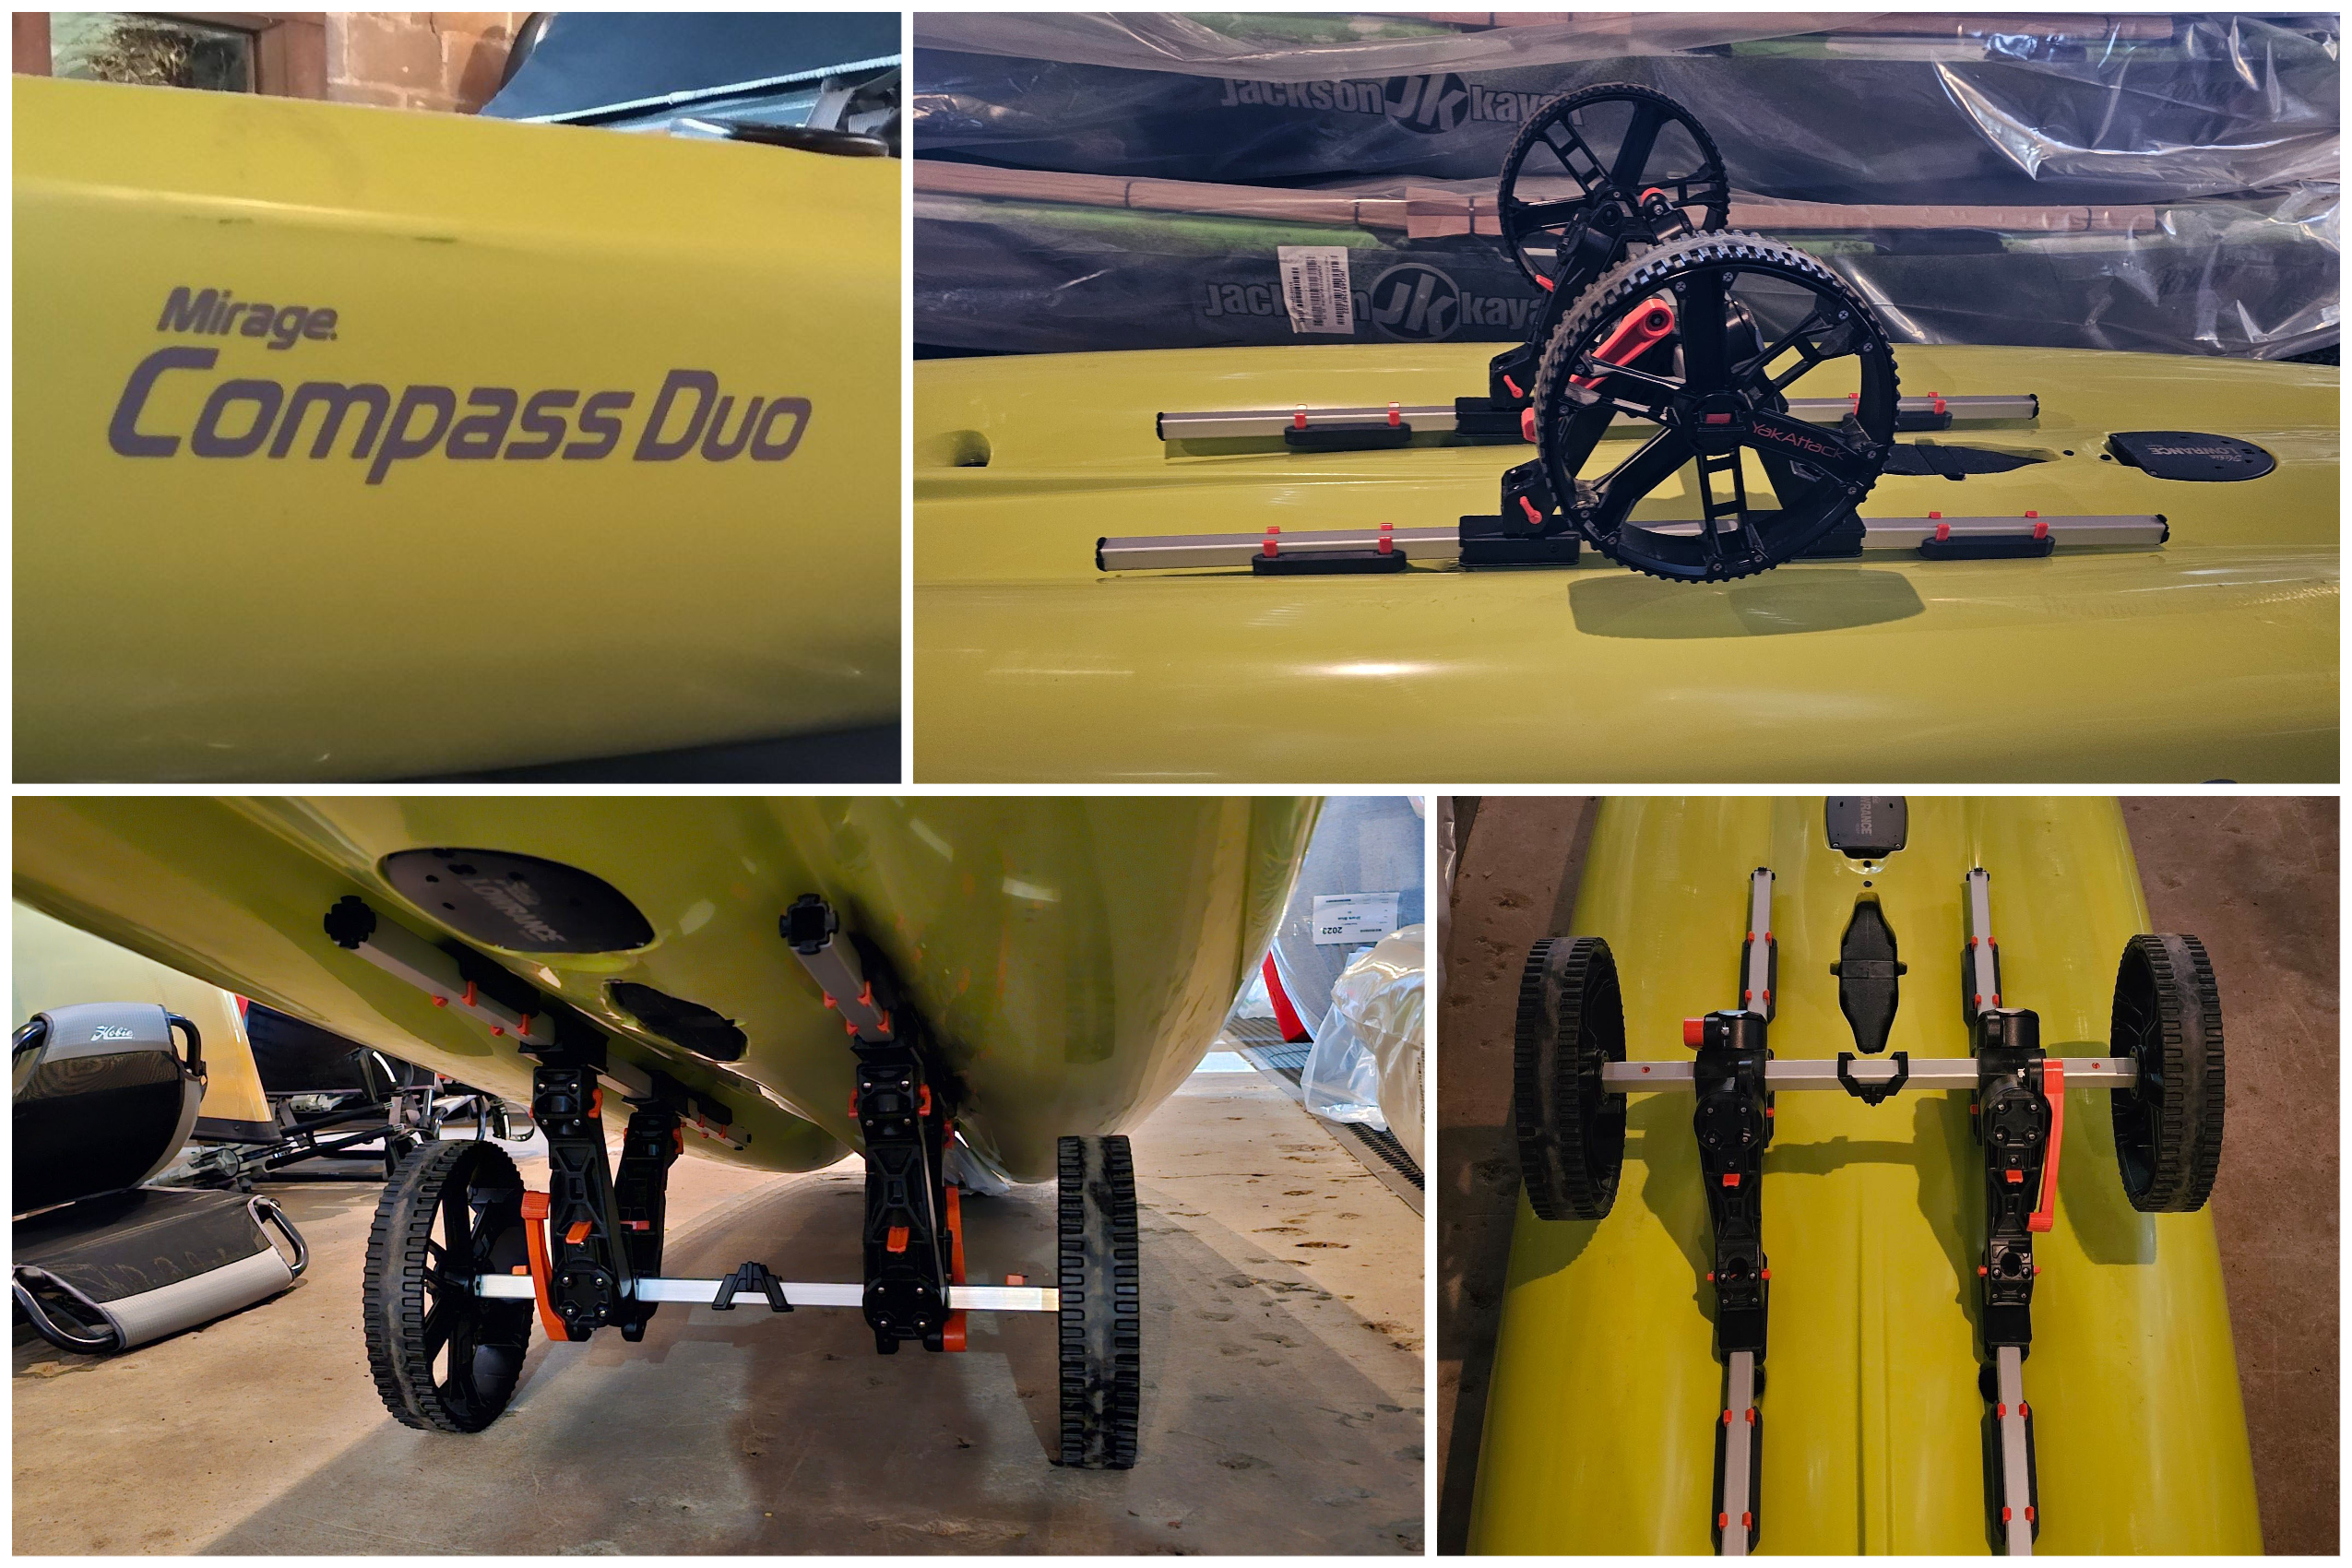 Hobie Compass Duo with YakAttack TowNStow BarCart Kayak Cart